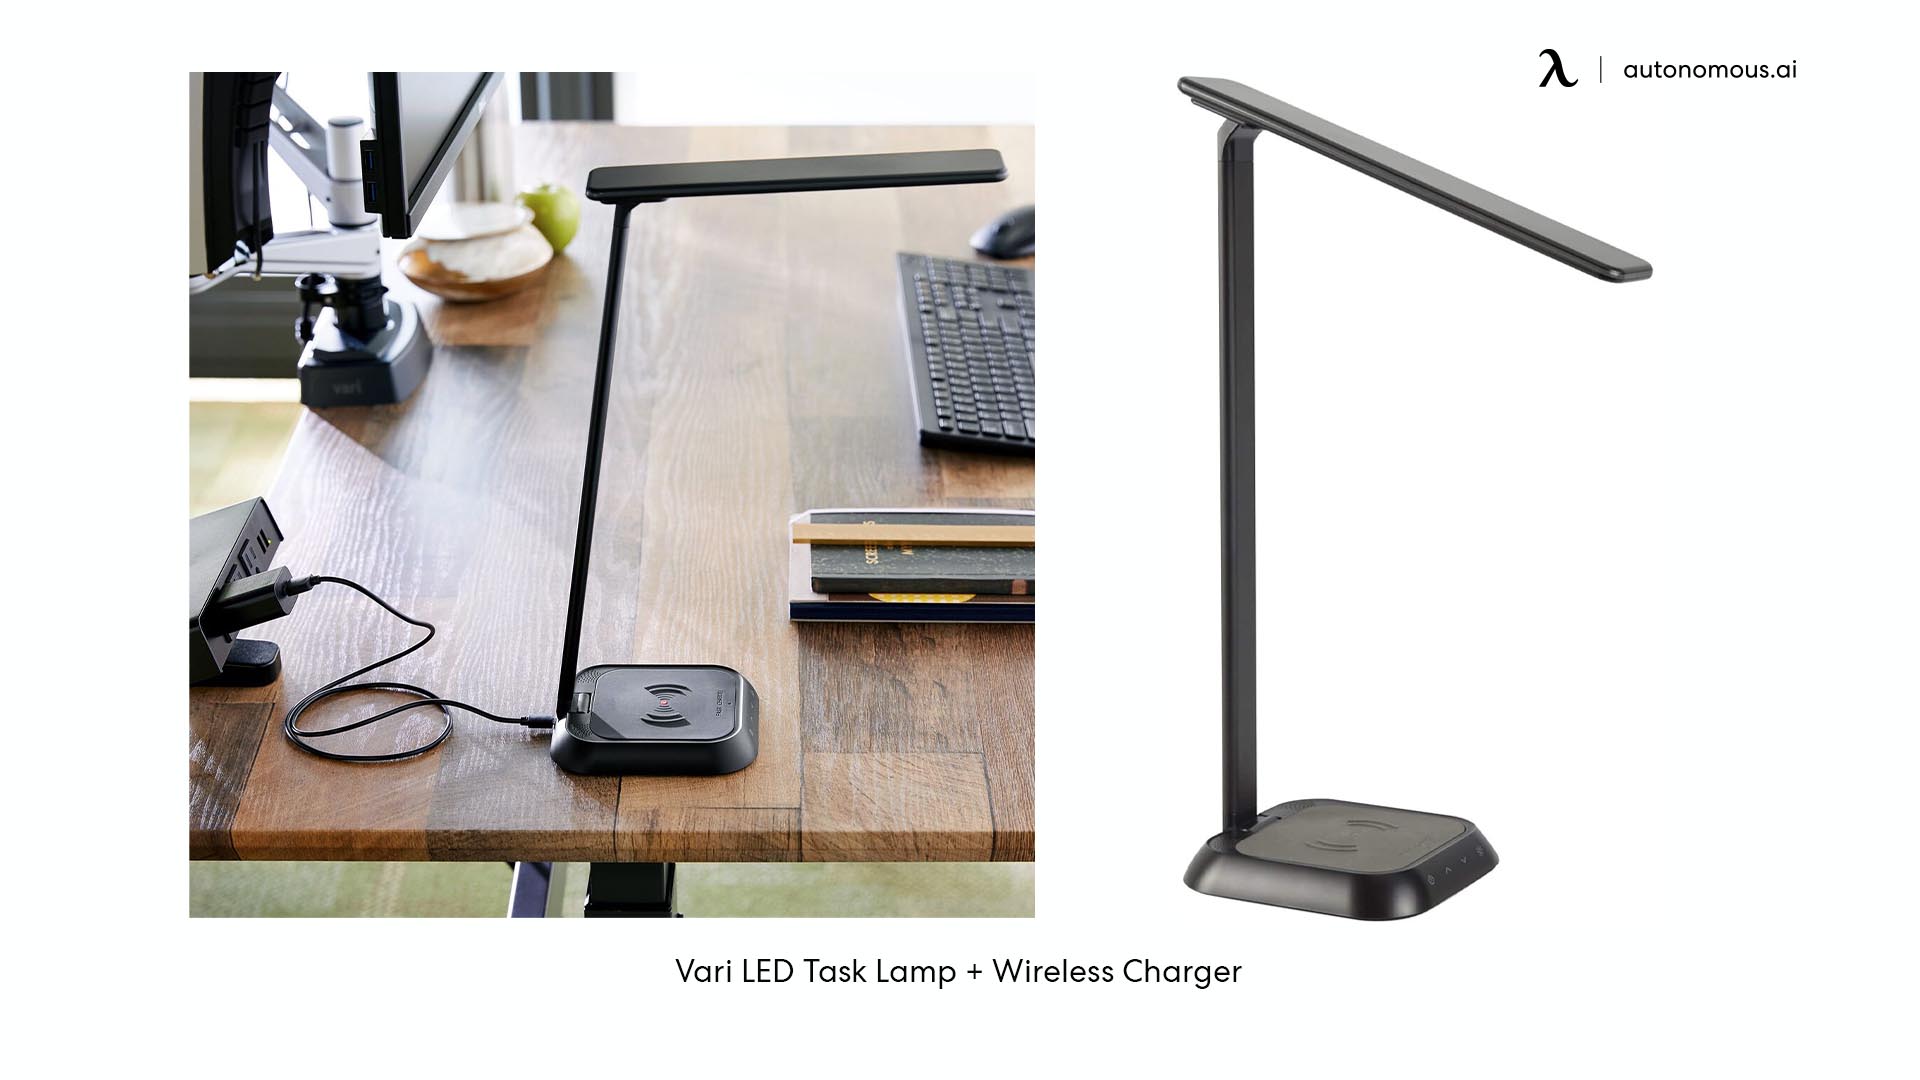 Vari LED Task Lamp + Wireless Charger